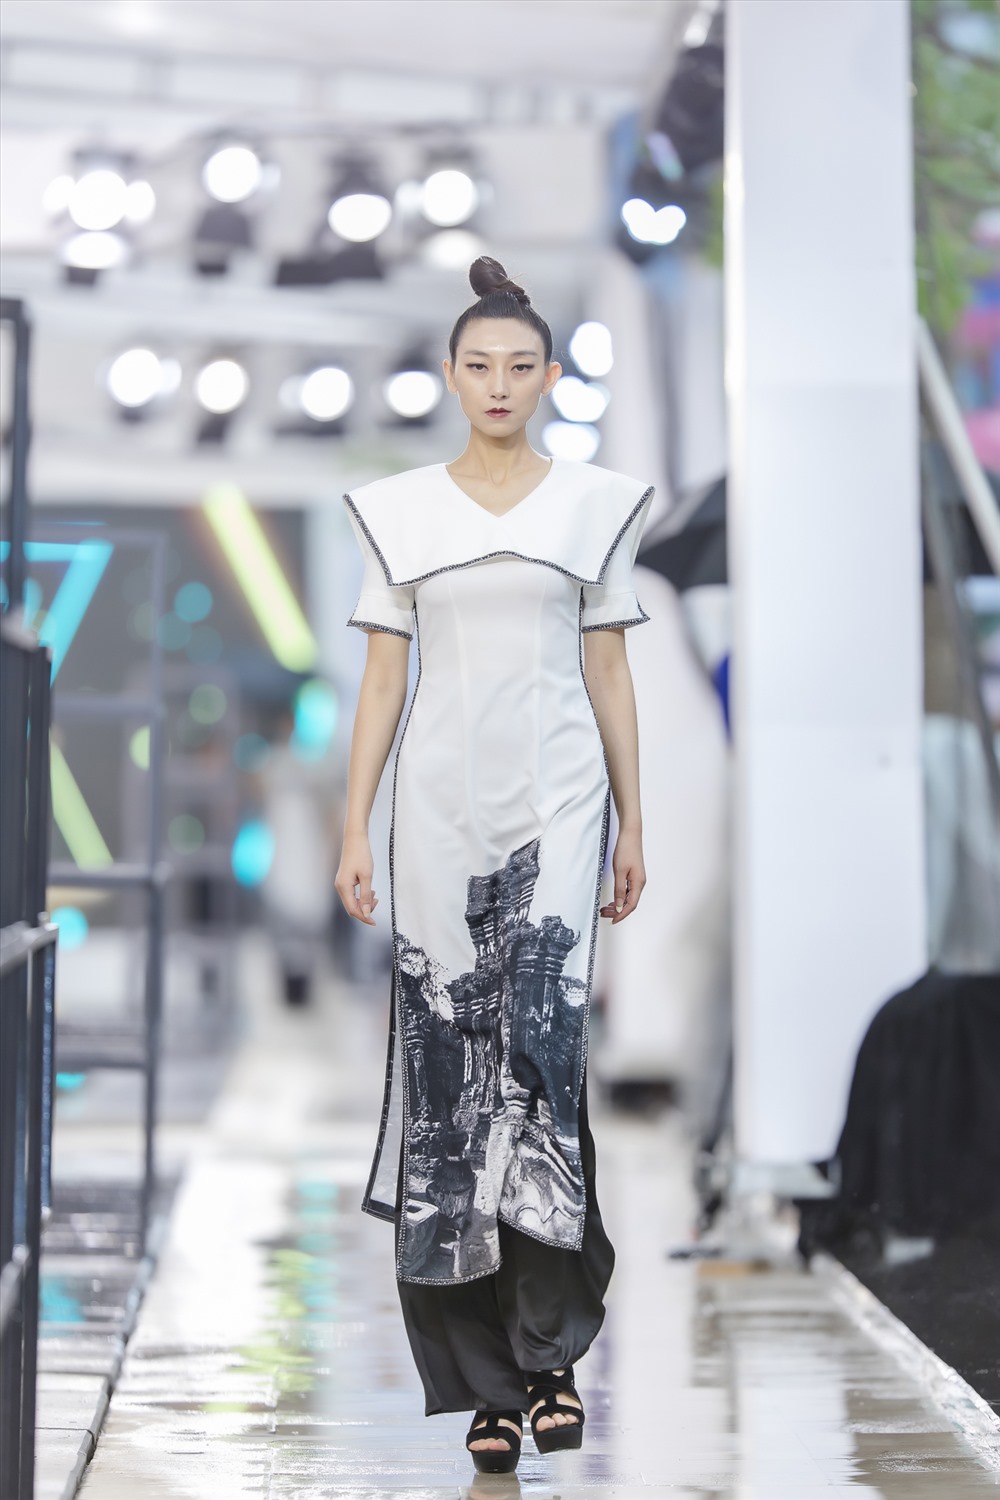 Bộ sưu tập áo dài lấy cảm hứng Thánh địa Mỹ Sơn của nhà thiết kế Hà Duy nhận được sự chú ý của khán giả quốc tế.